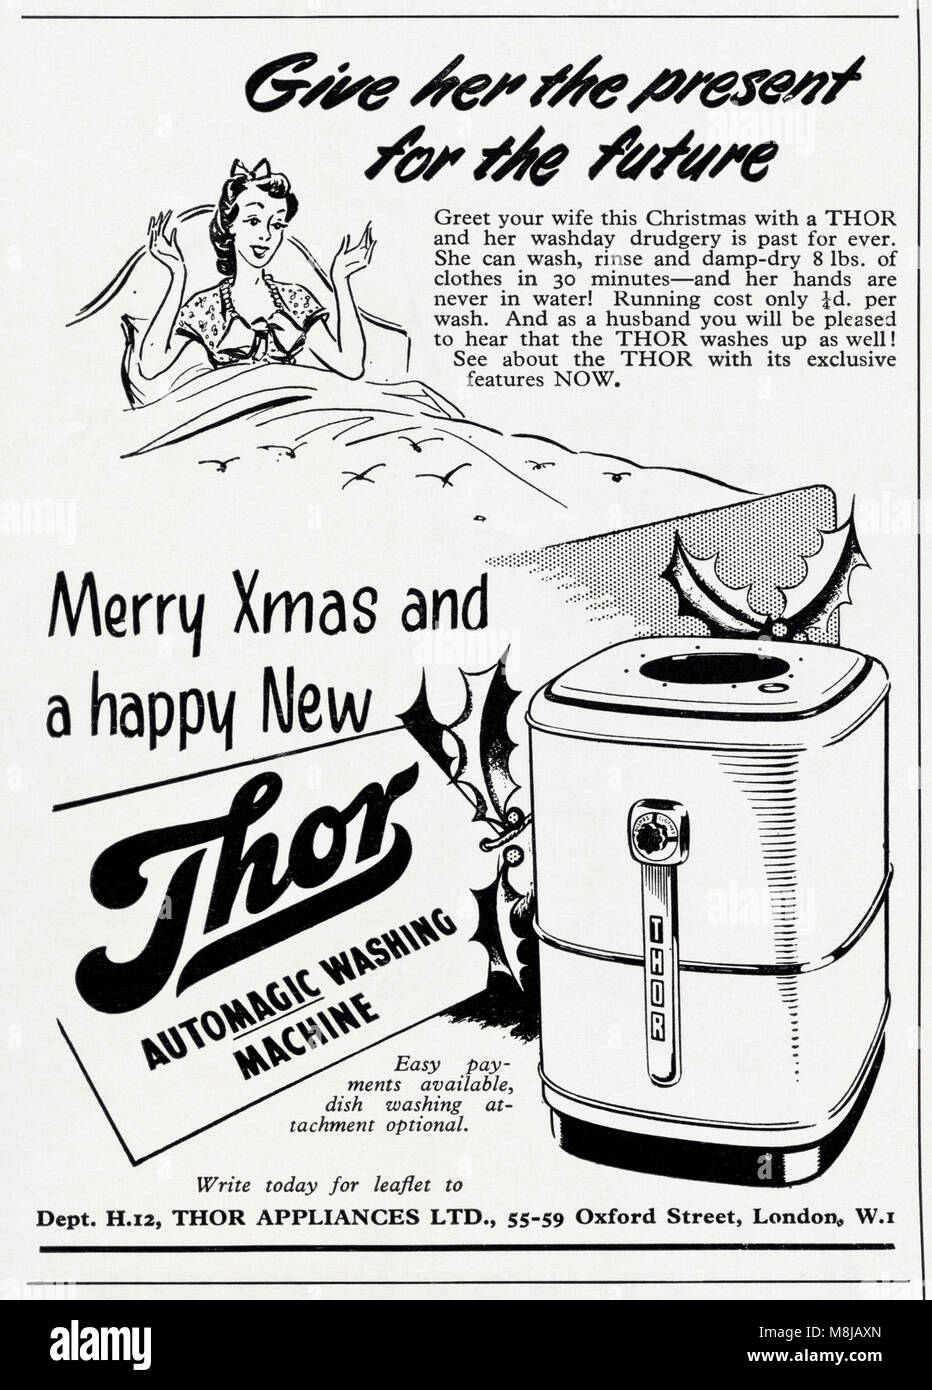 25s original old vintage advertisement advertising Thor washing